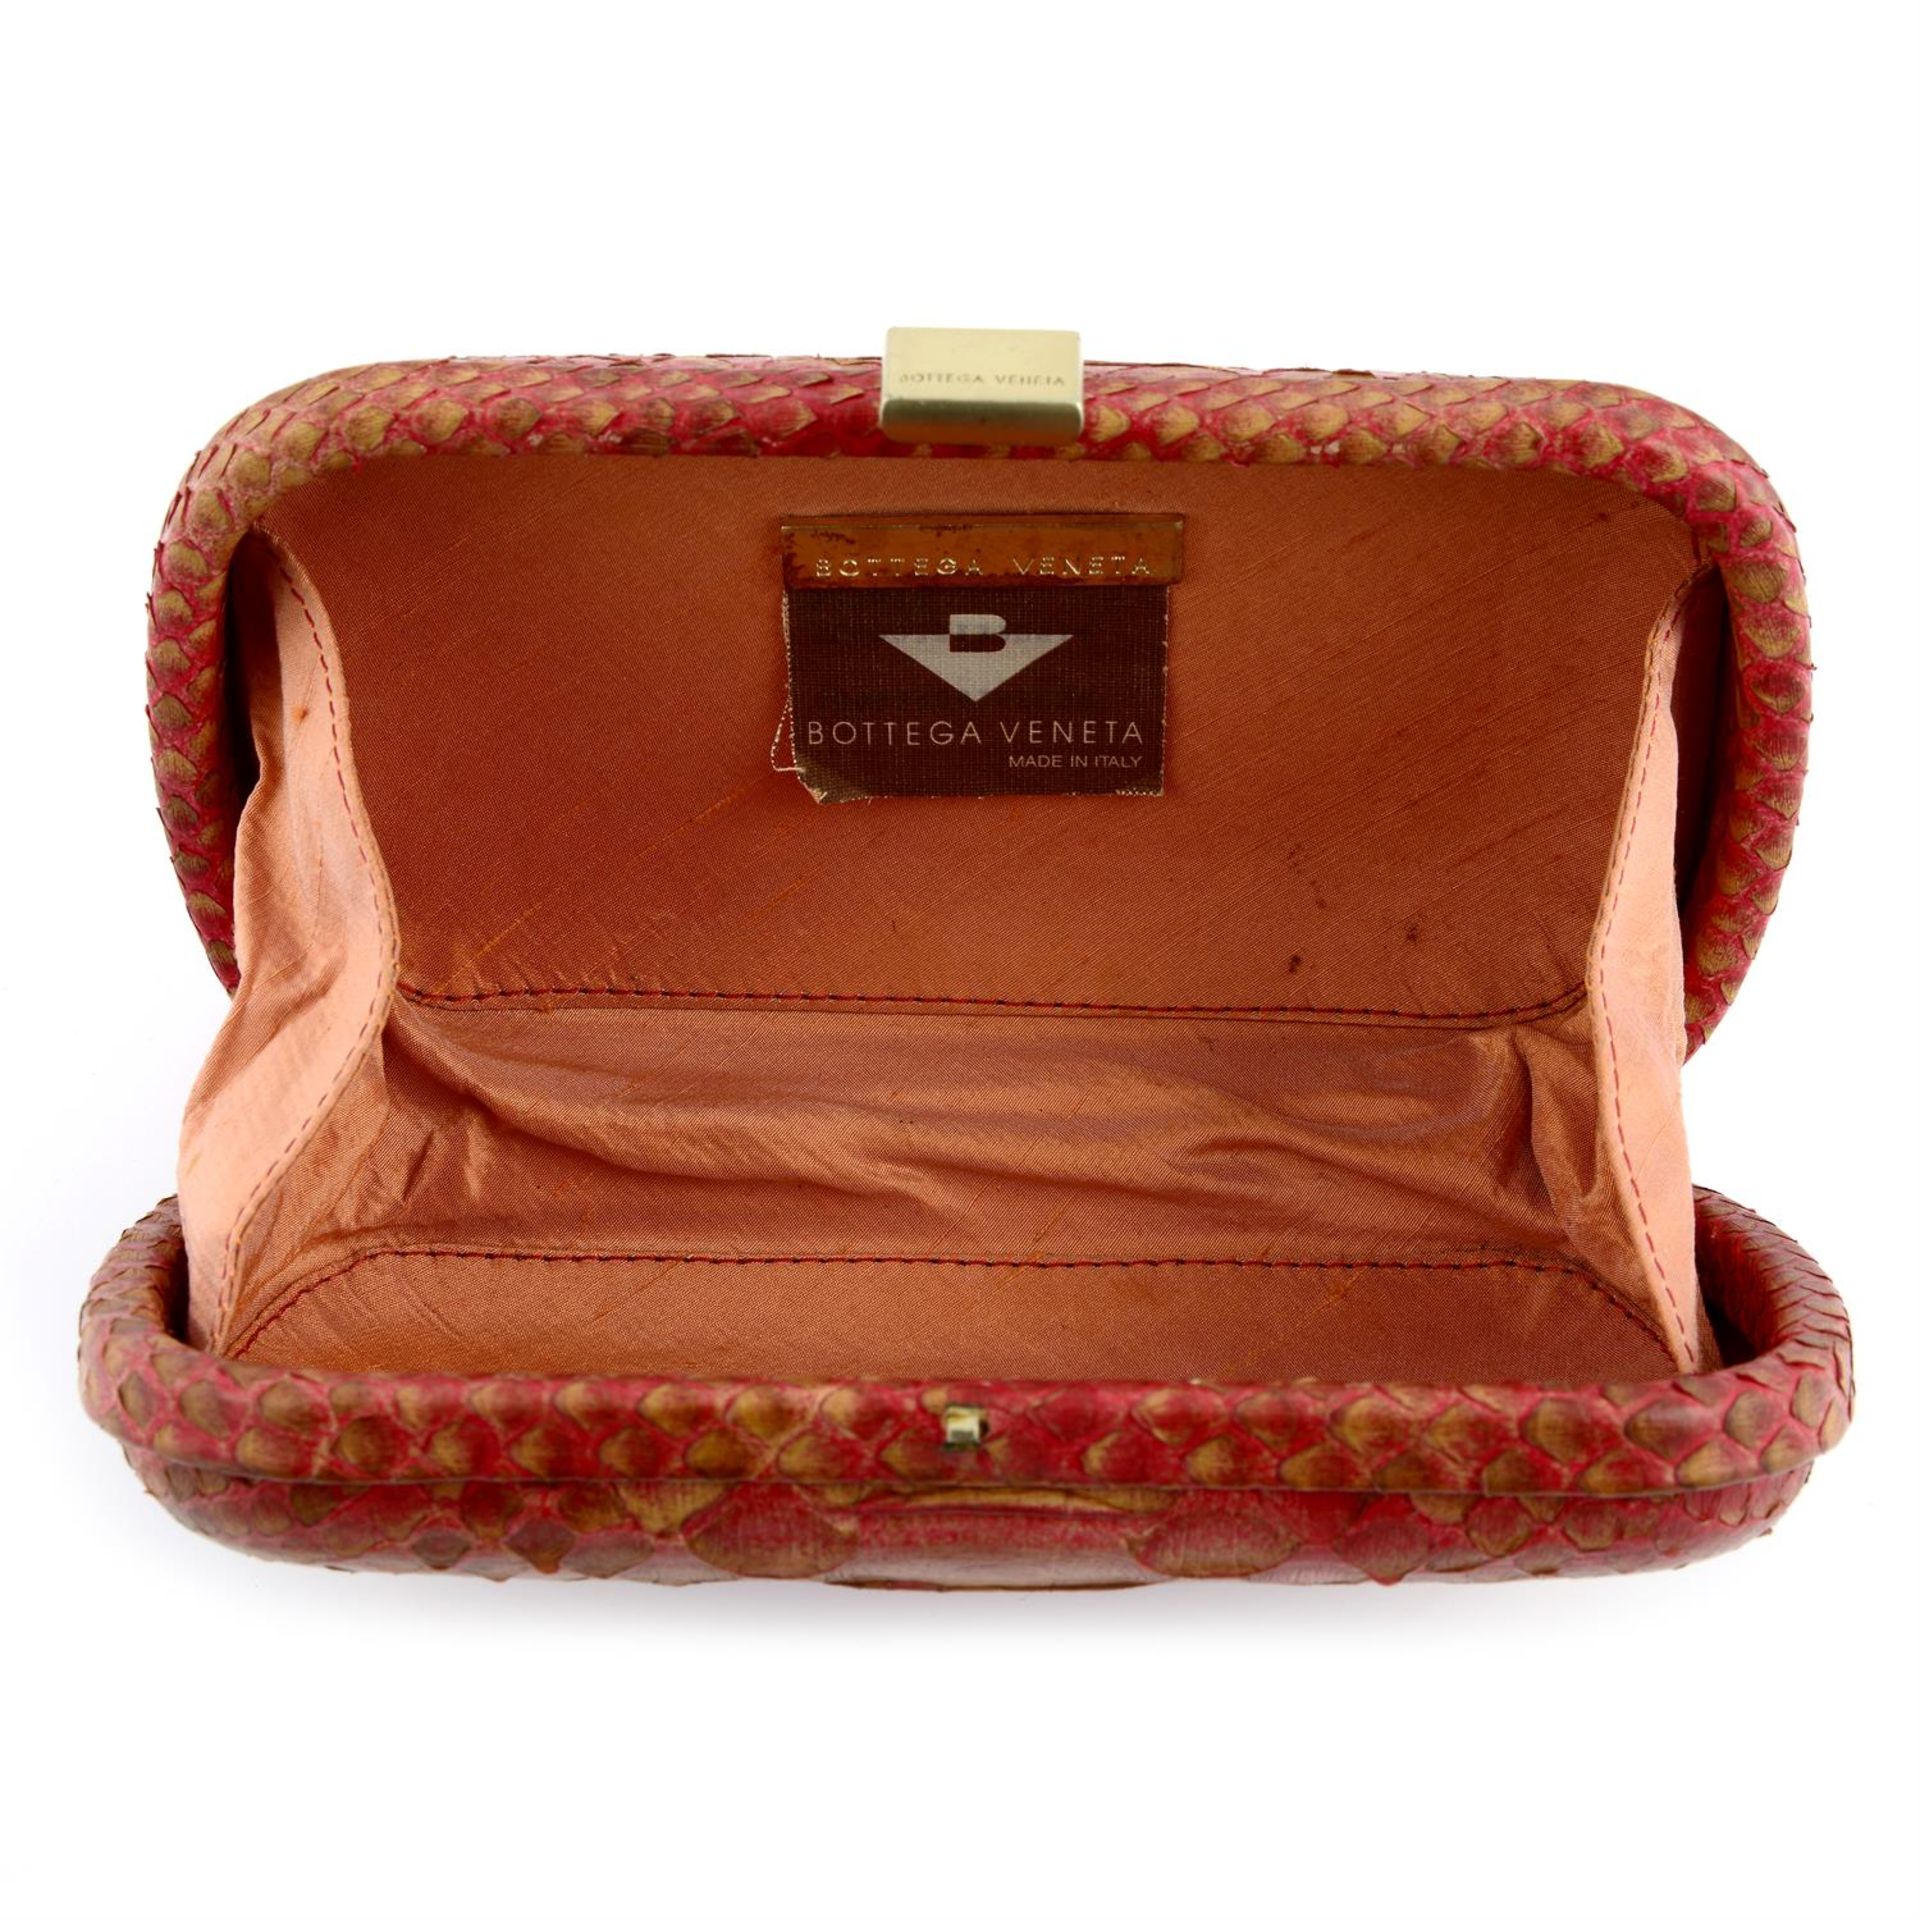 BOTTEGA VENETA - a pink snakeskin box clutch bag. - Bild 3 aus 3